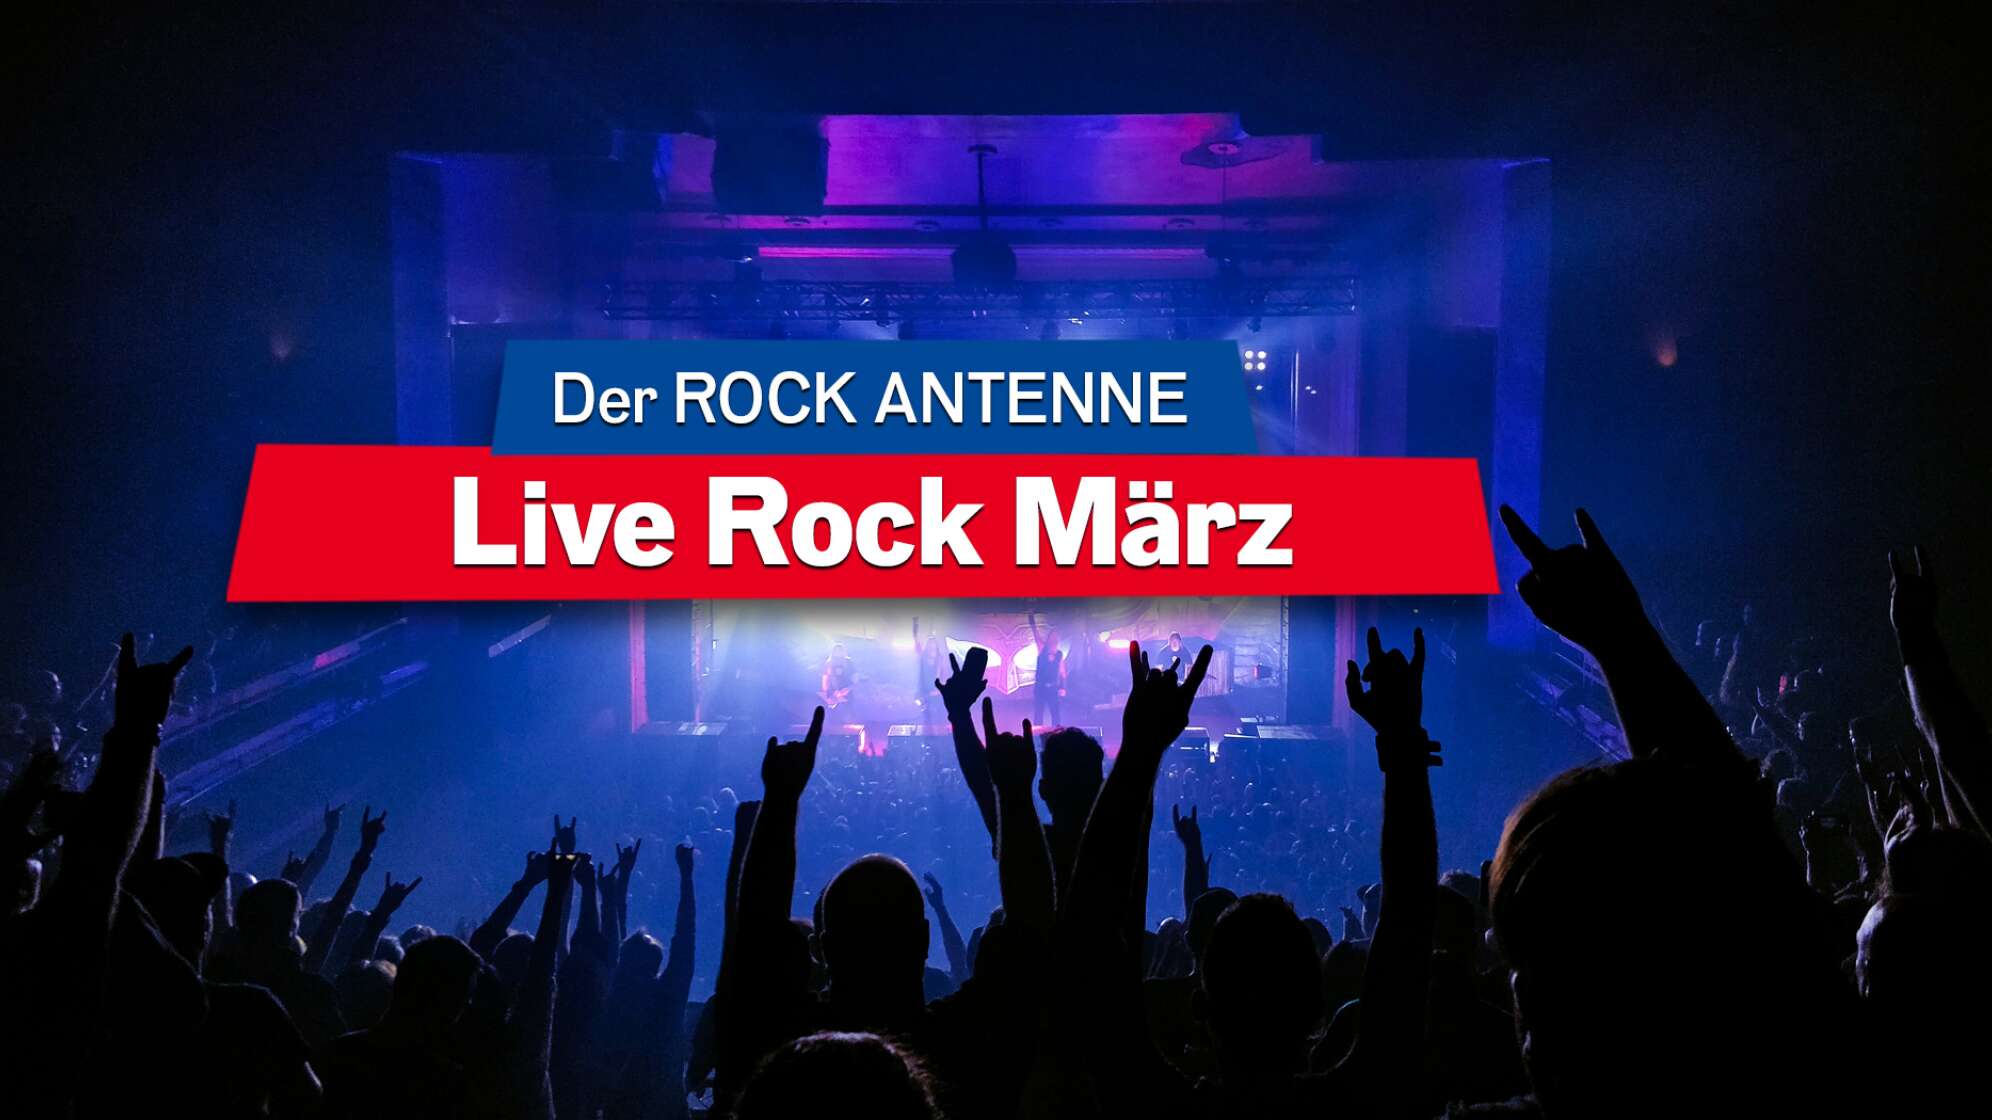 Blick auf die Bühne bei einem Konzert, Aufschrift 'Der ROCK ANTENNE Live Rock März'